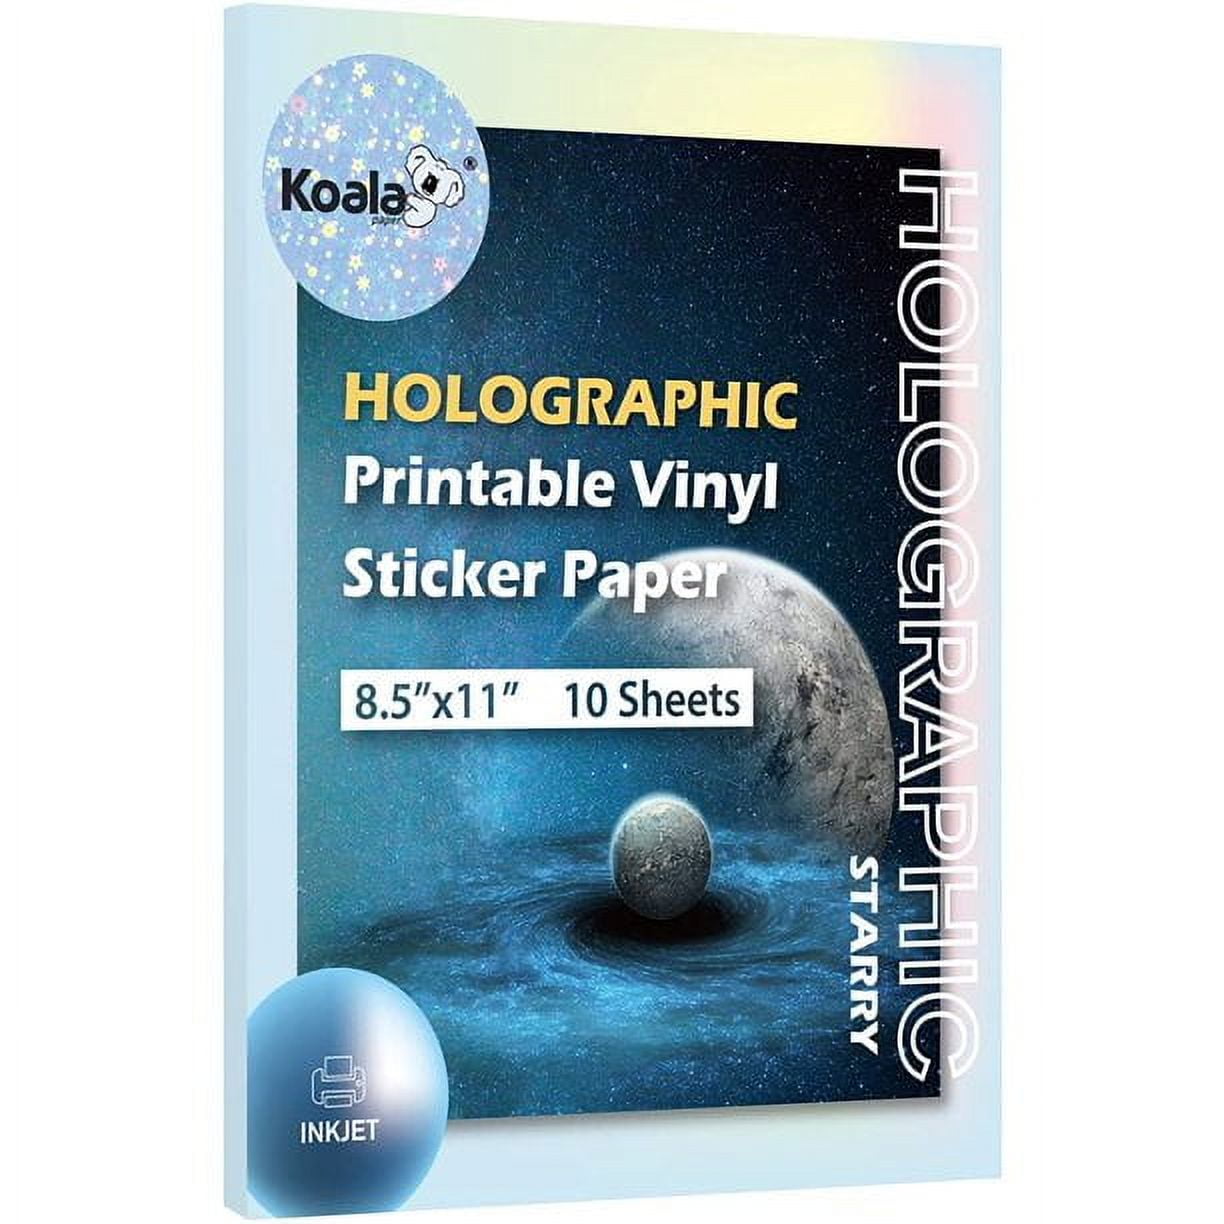 Koala Holographic Sticker Paper for Inkjet Printer Starry 10